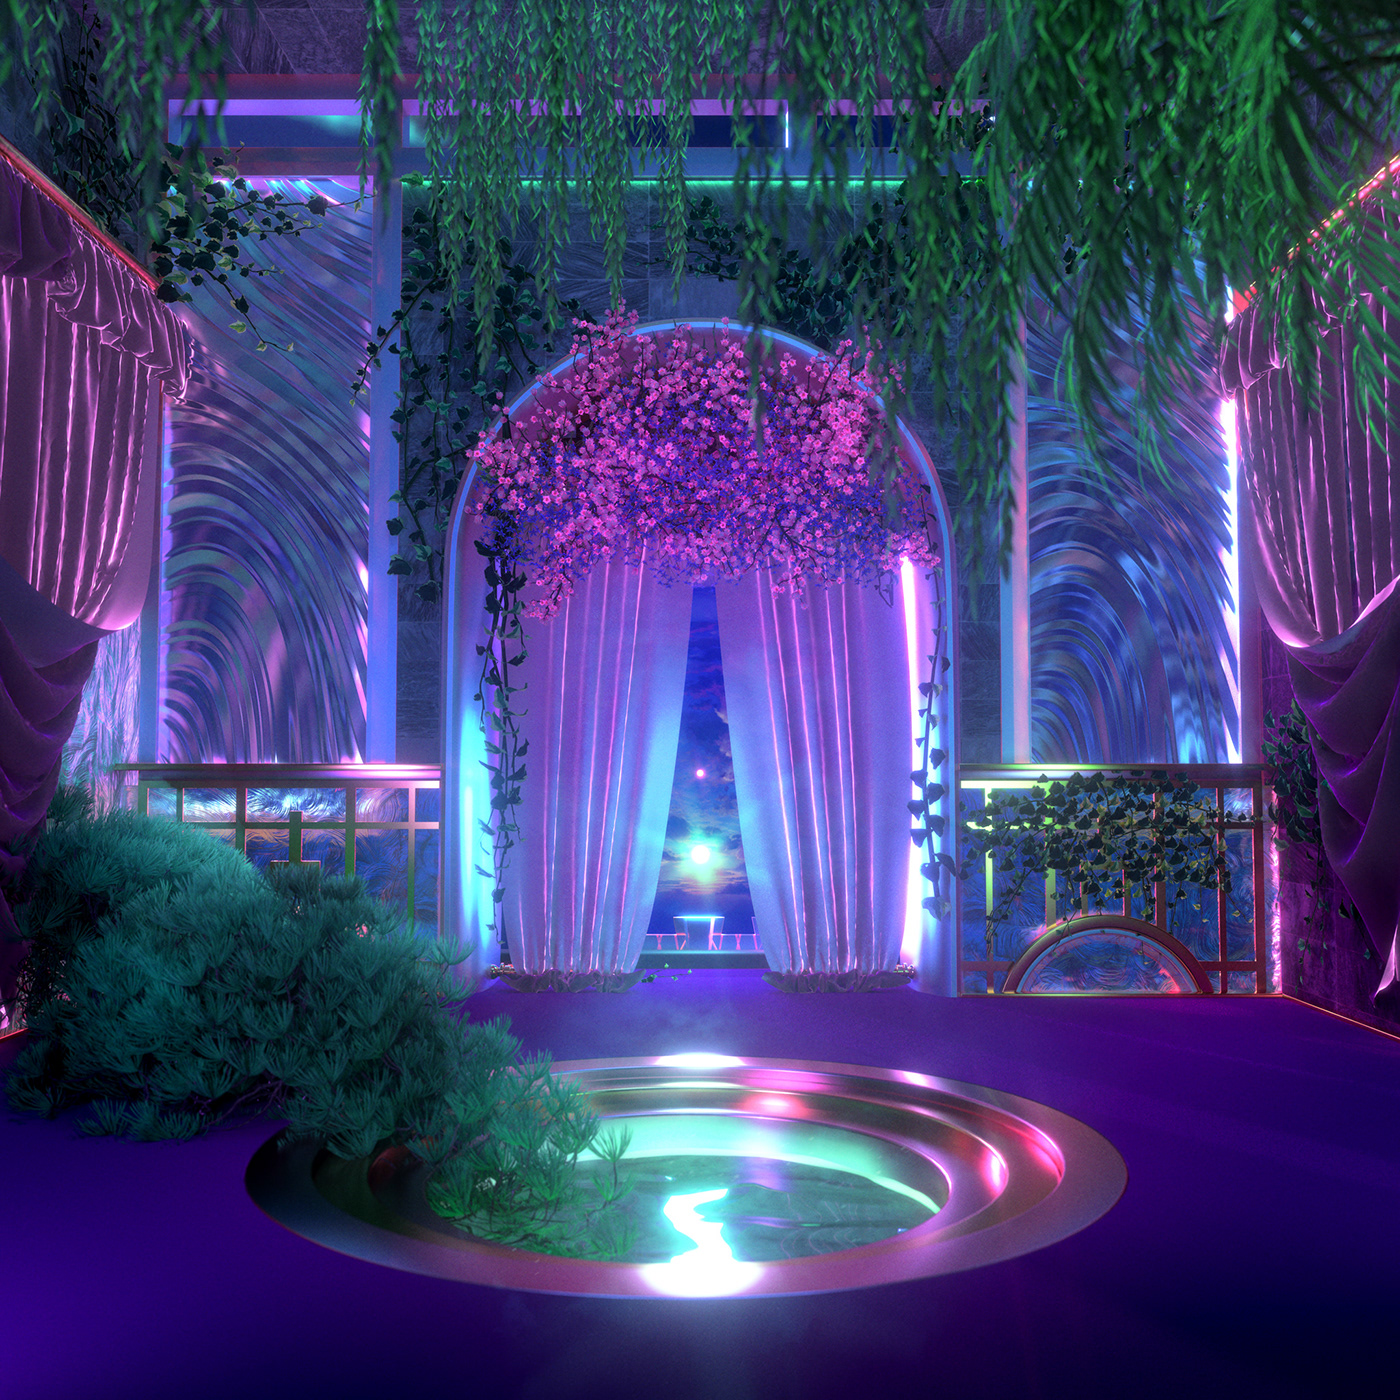 3D architecture cinema 4d concept art Digital Art  dreamscape environment Interior Landscape redshift